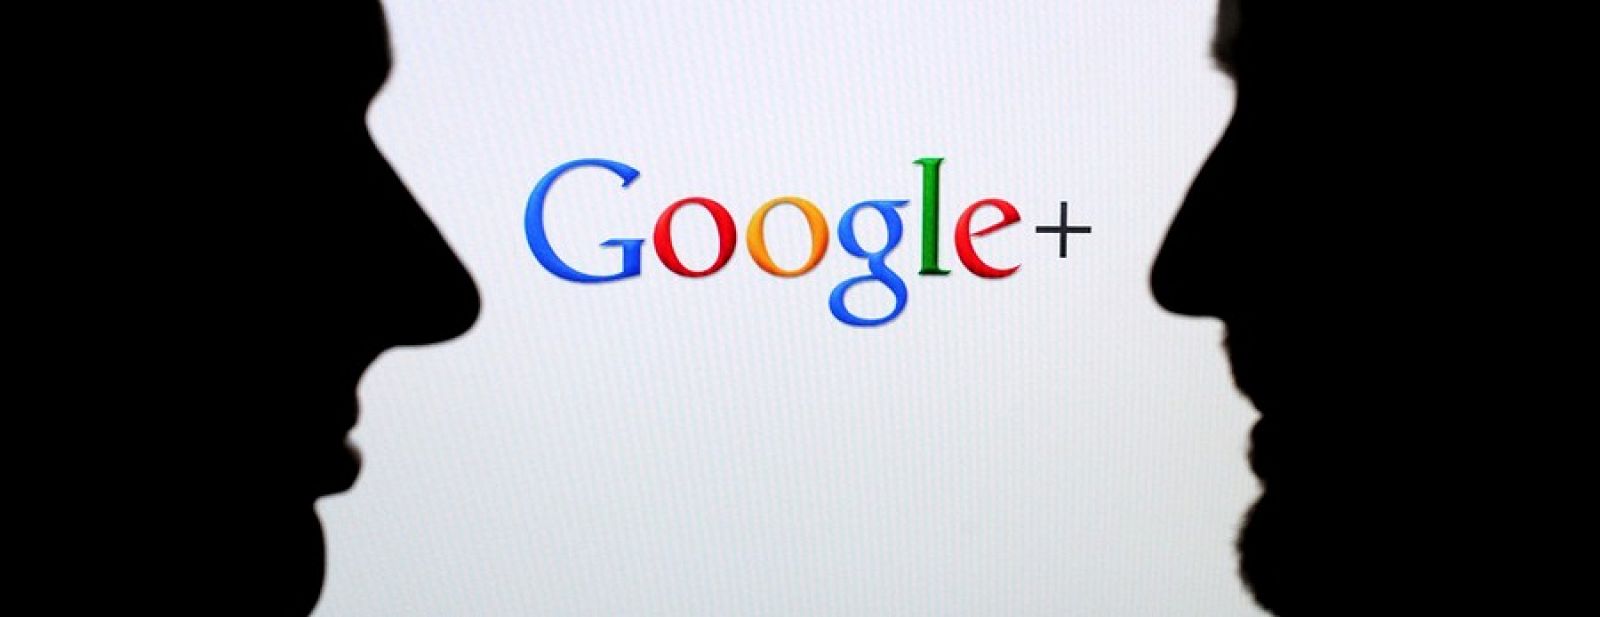 Google elimina Buzz, uno de sus fracasos sociales, para potenciar el uso de Google+